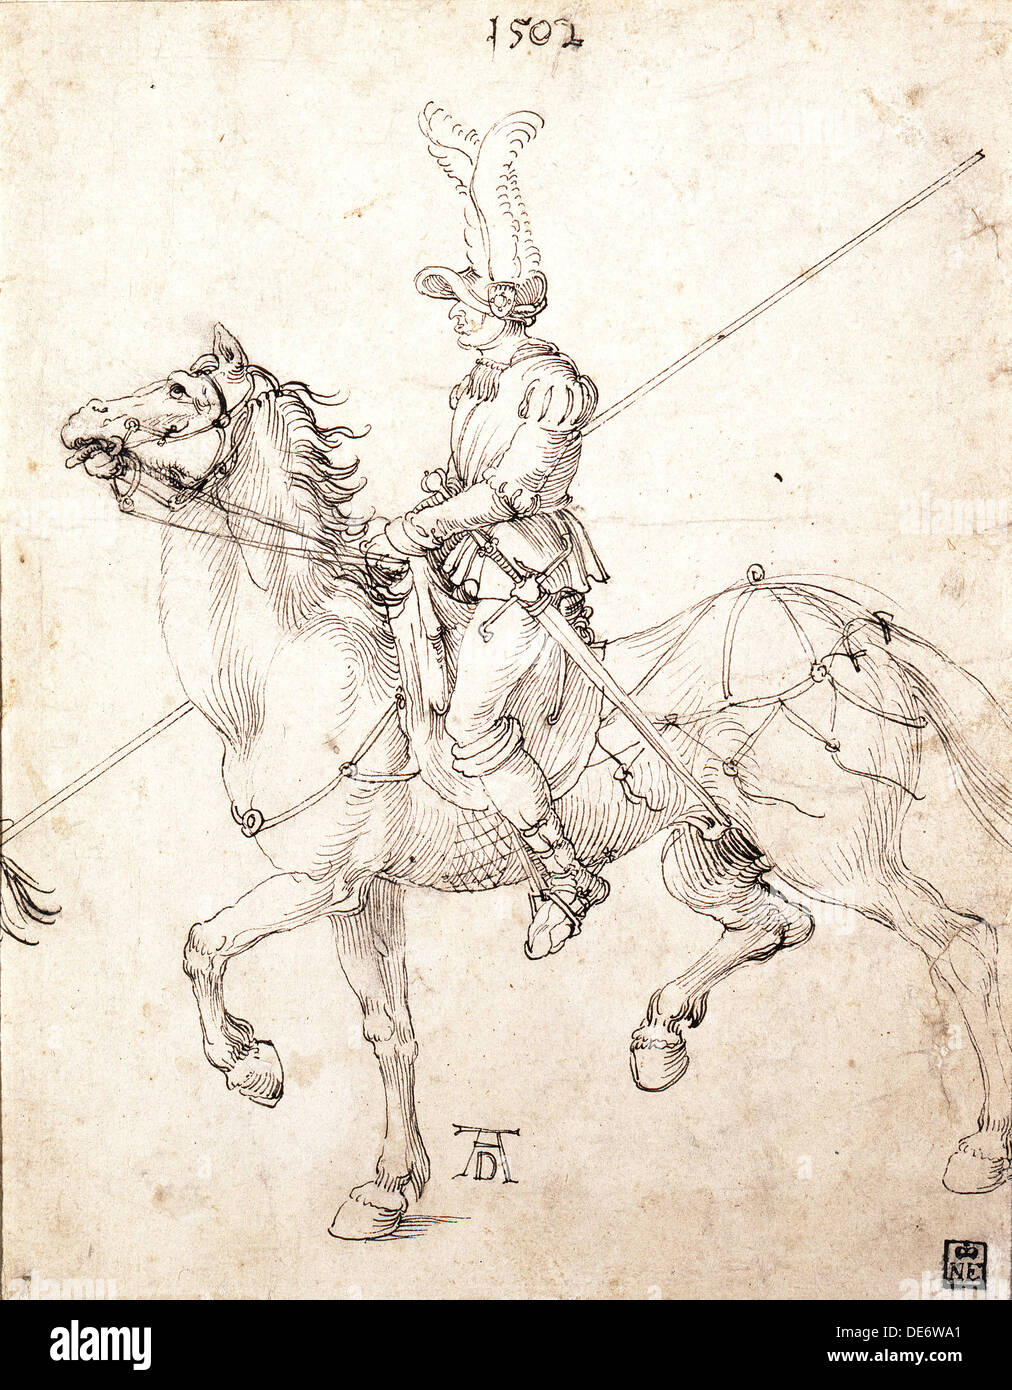 Lancer on Horseback, 1502. Artist: Dürer, Albrecht (1471-1528) Stock Photo